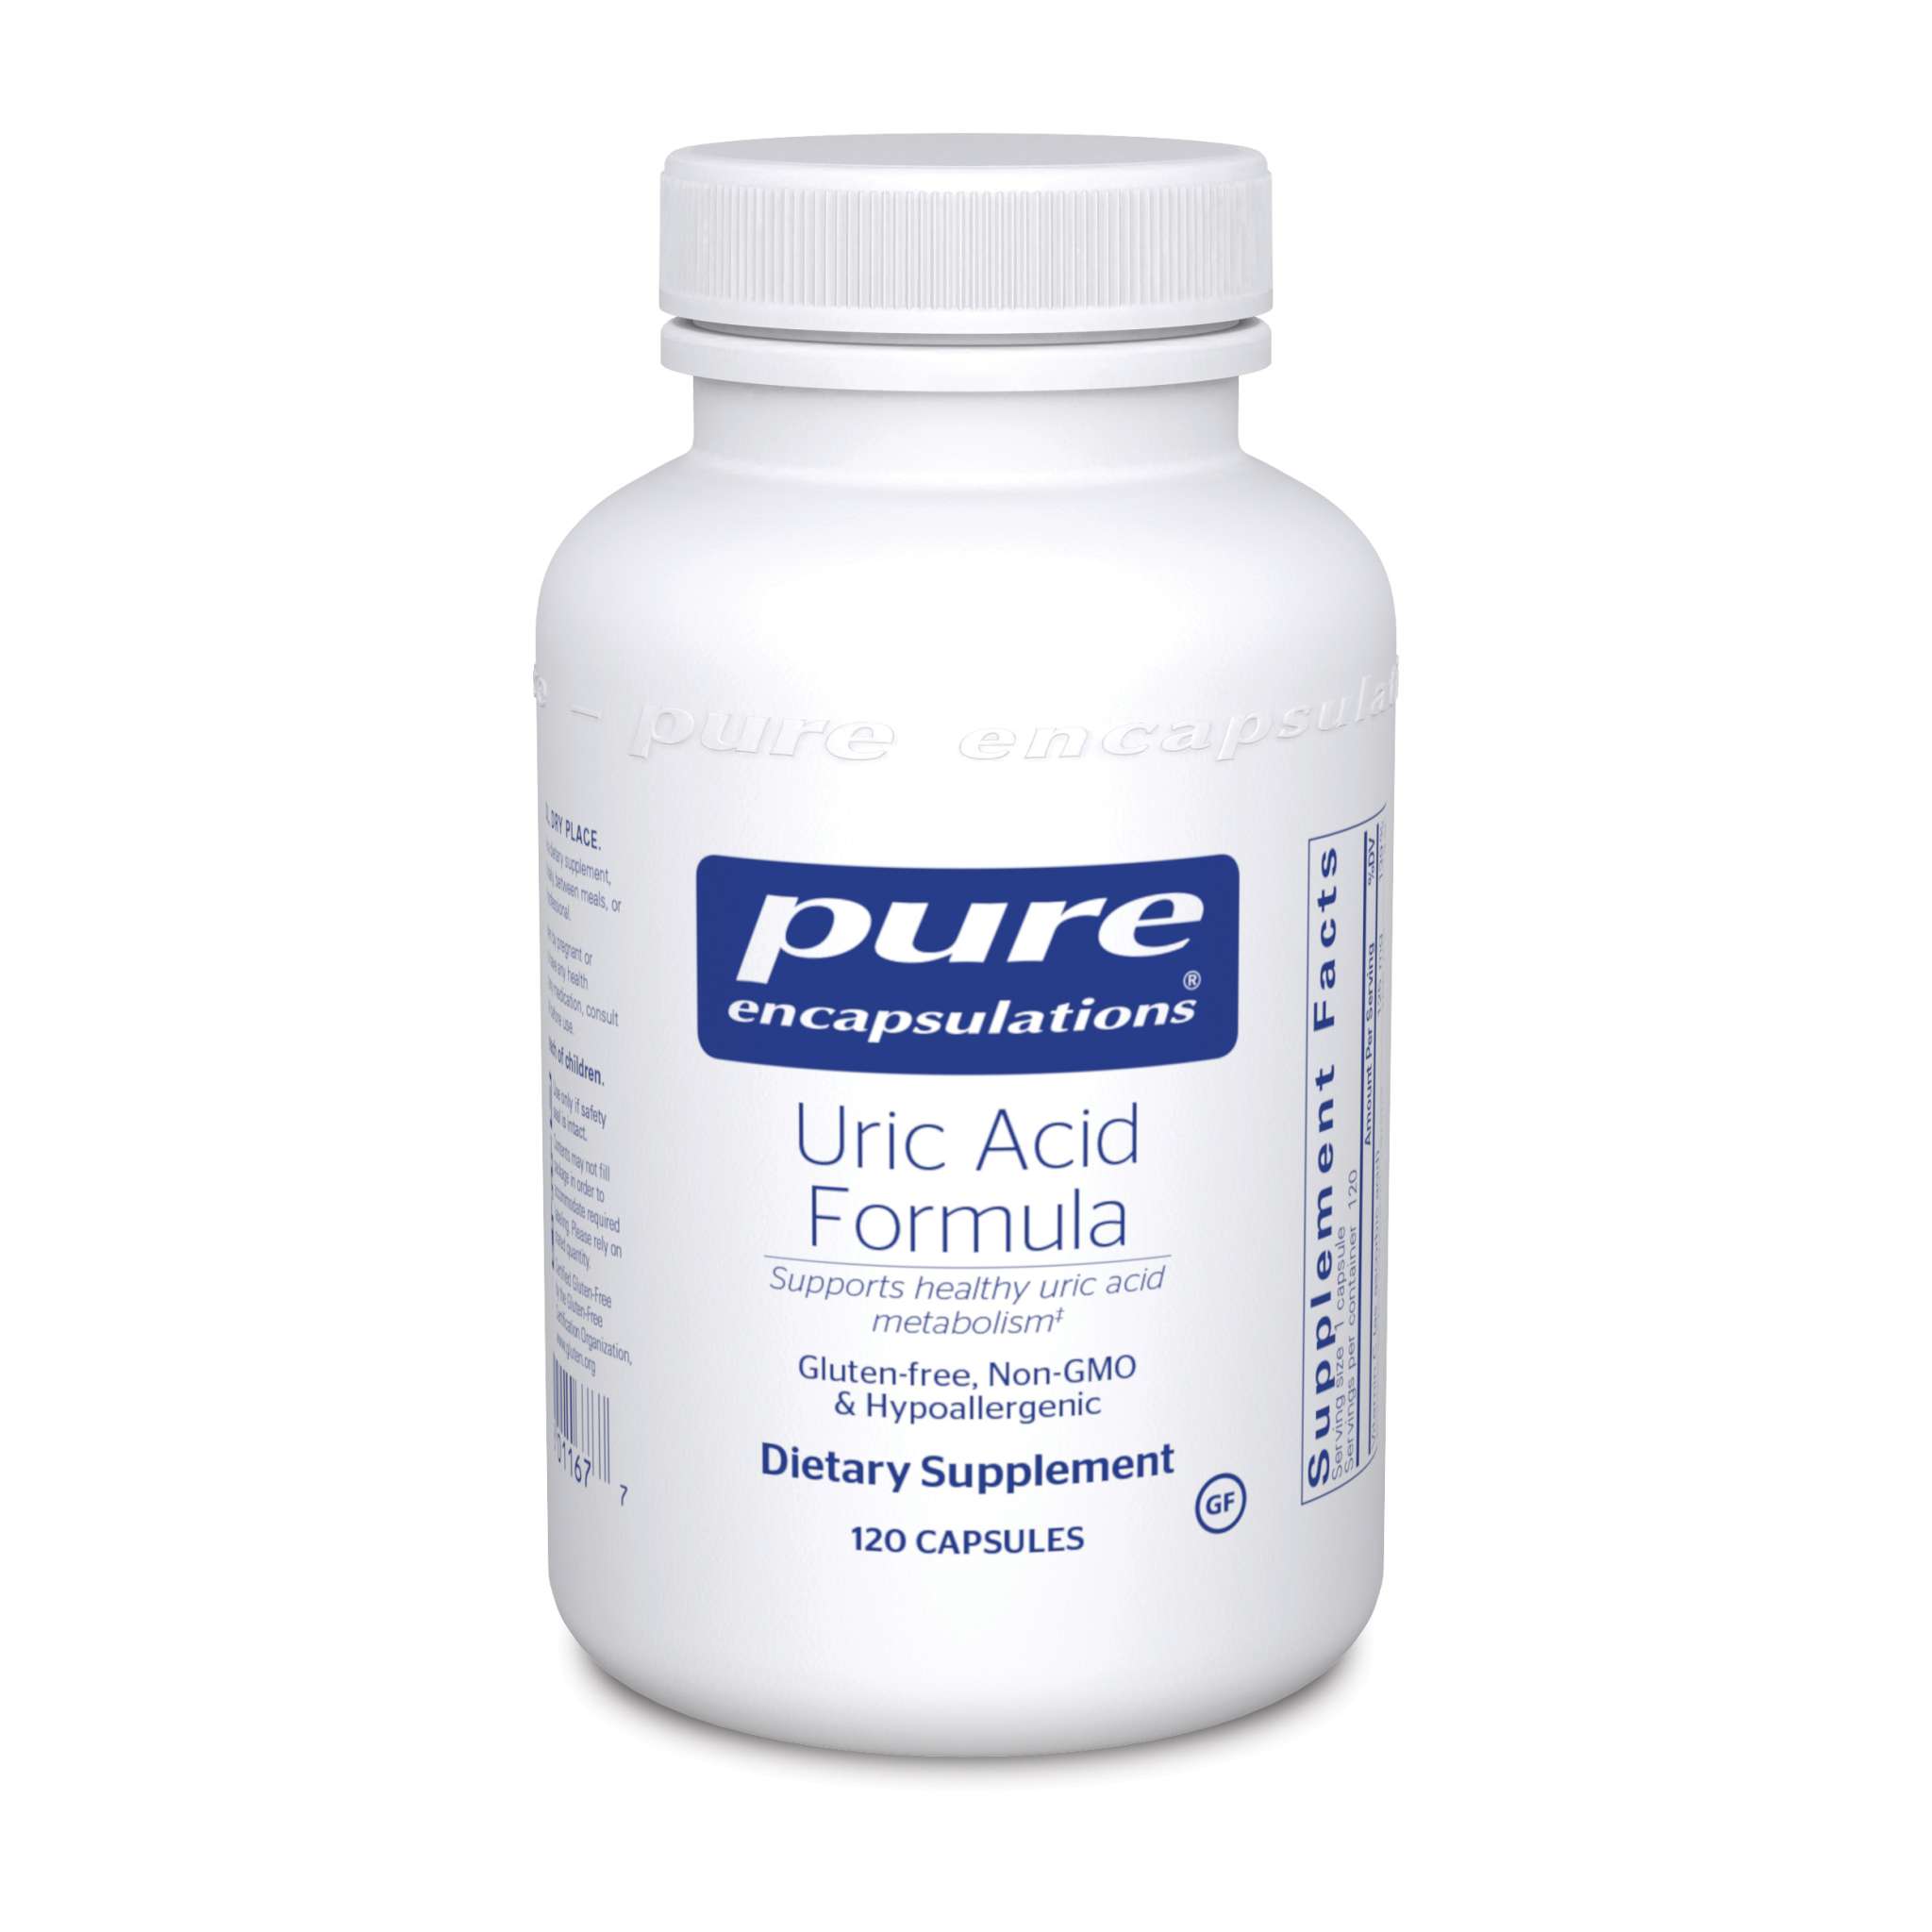 Pure Encapsulations - Uric Acid Formula